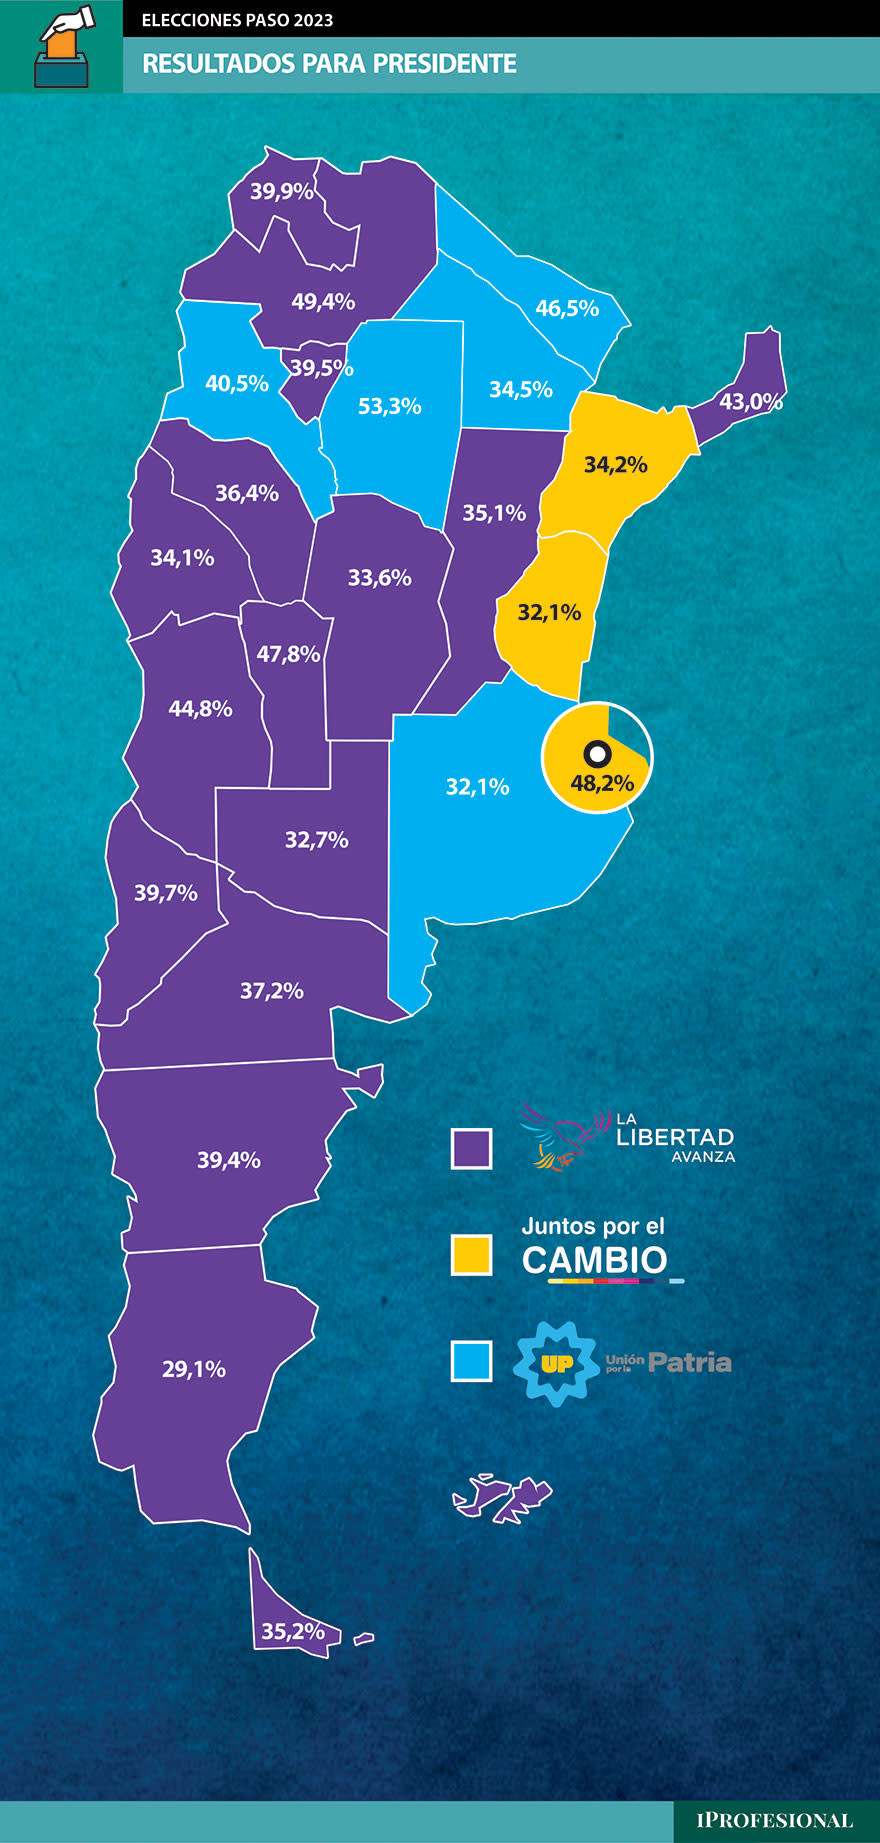 Así quedó el mapa político de la Argentina tras el triunfo de Javier Milei en las PASO